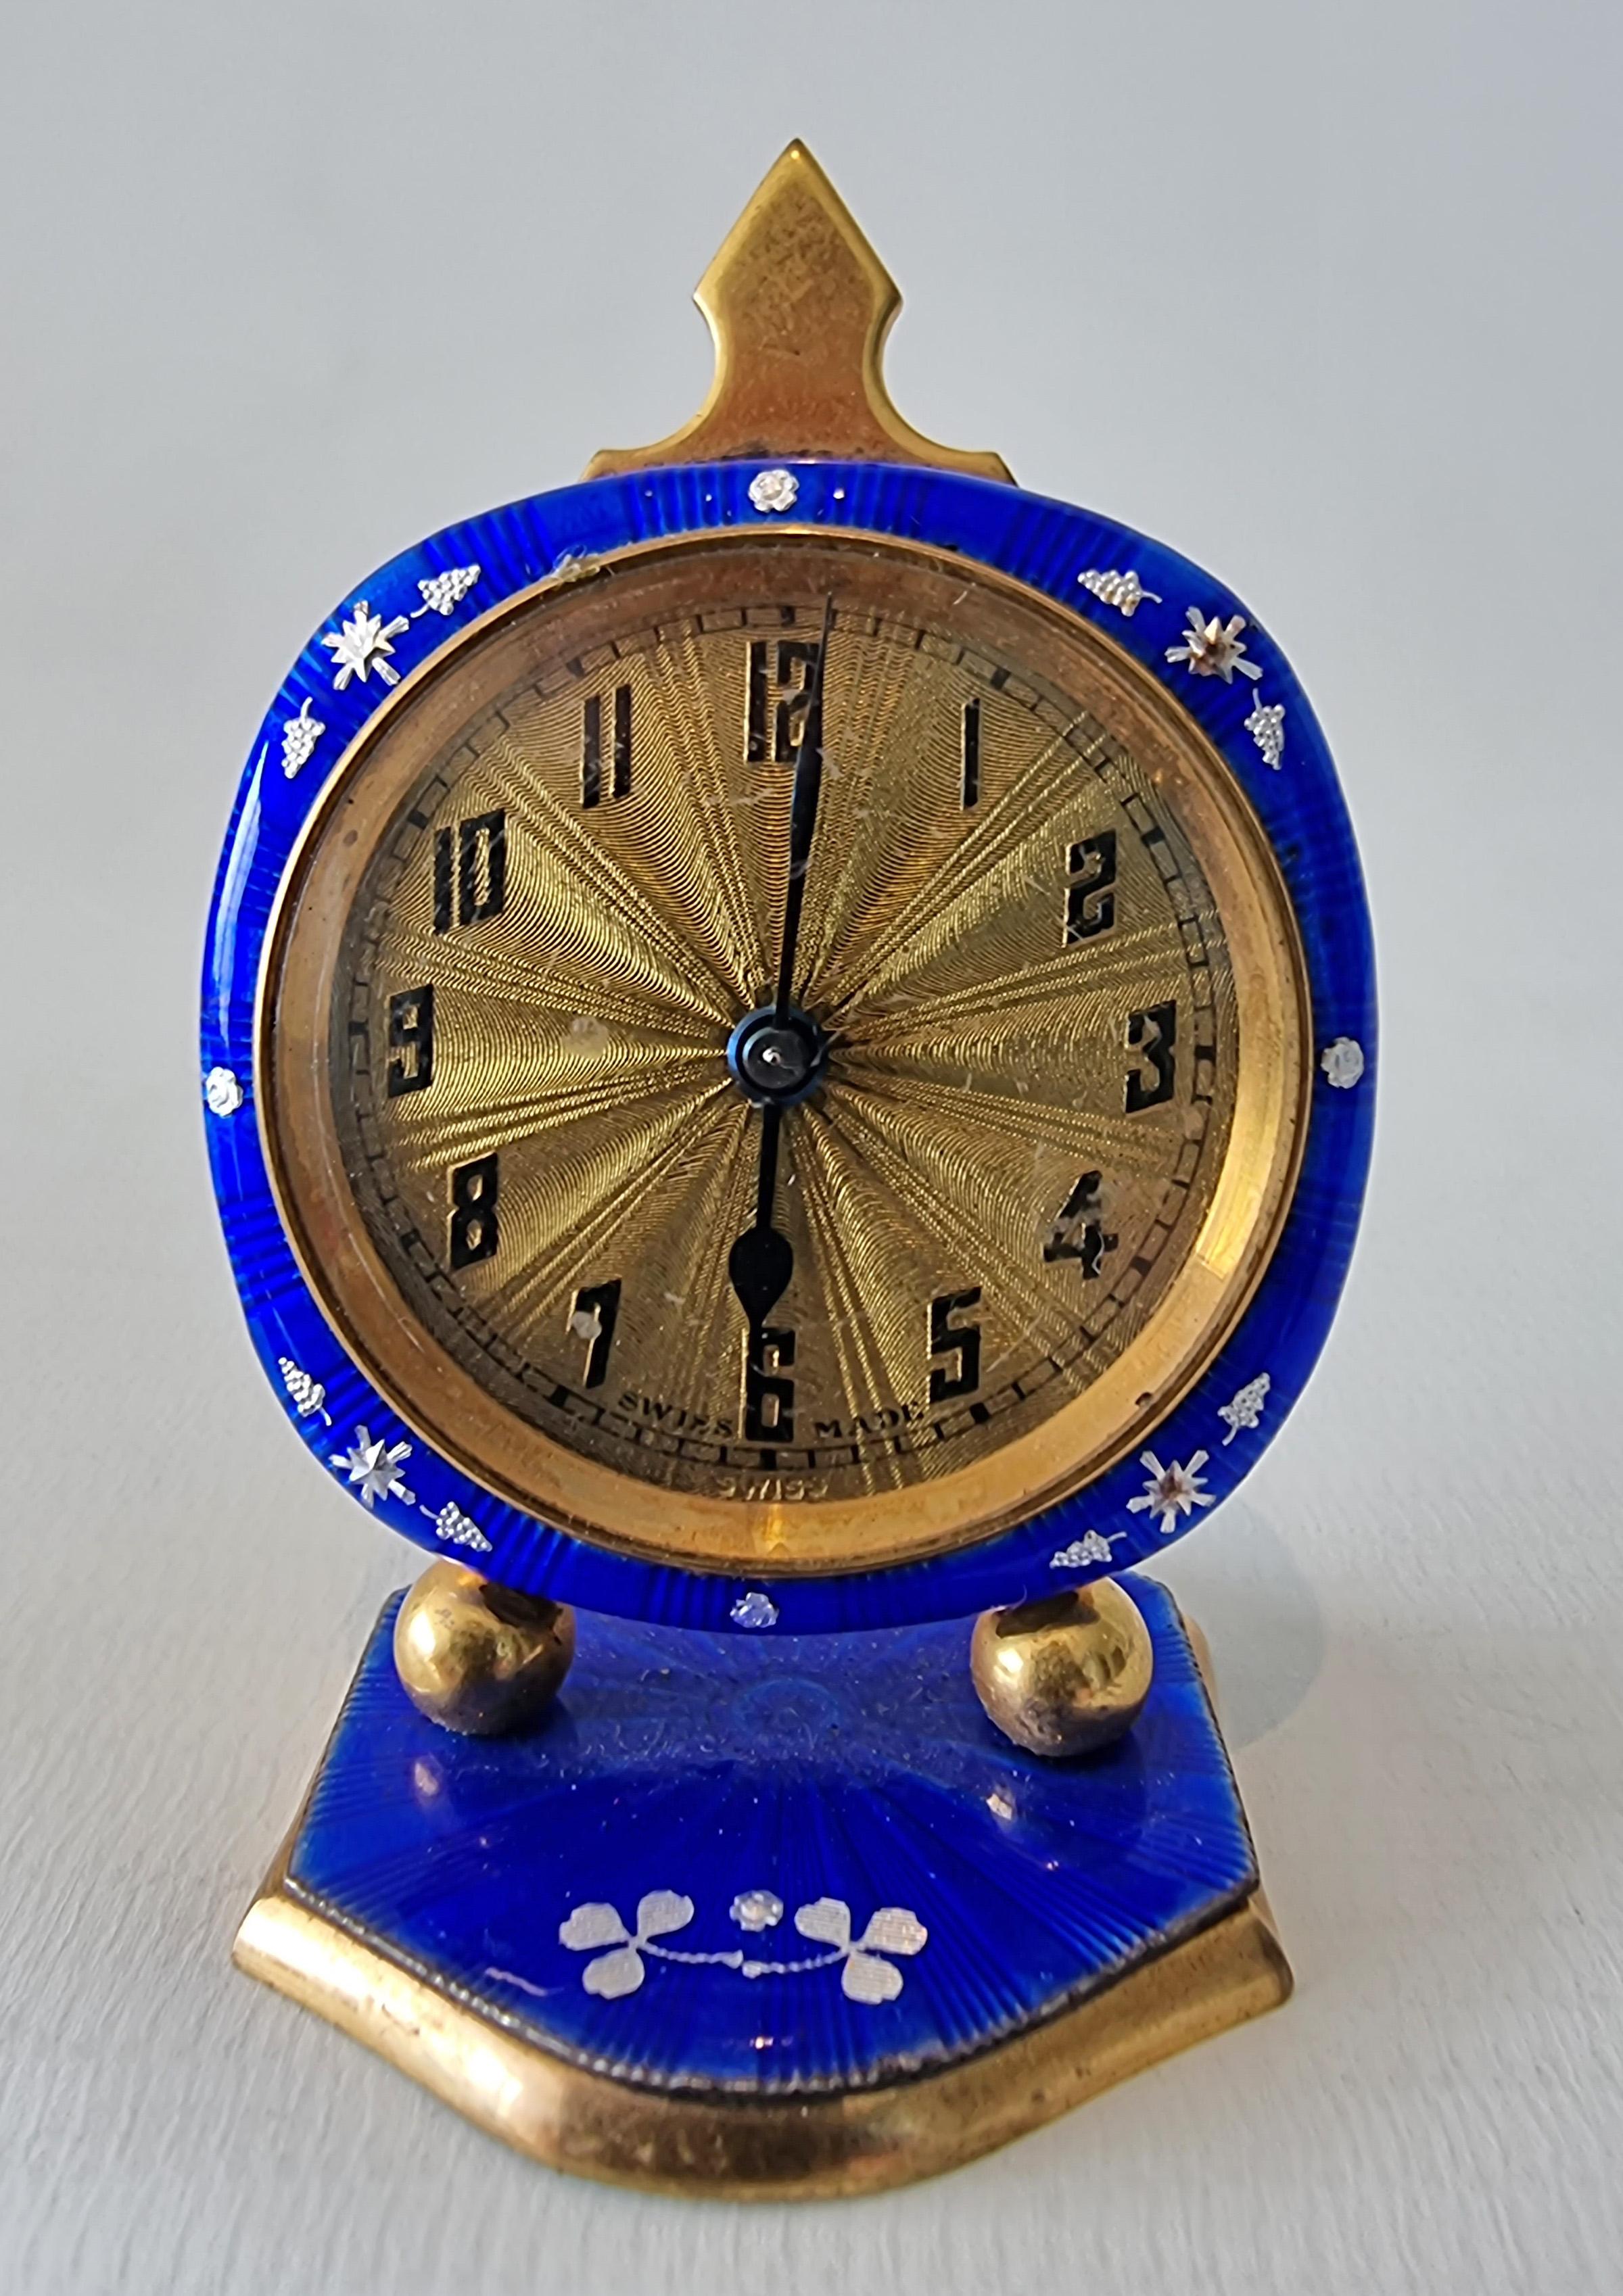 Eine kleine blaue guillochierte Emaille vergoldet metel sub Miniatur Boudoir Uhr. Mit übermalten silbernen Blumen auf dem Motor gedreht Email, das vergoldete Zifferblatt Motor gedreht mit Starburst-Effekt und arabischen Ziffern, markiert swiss made